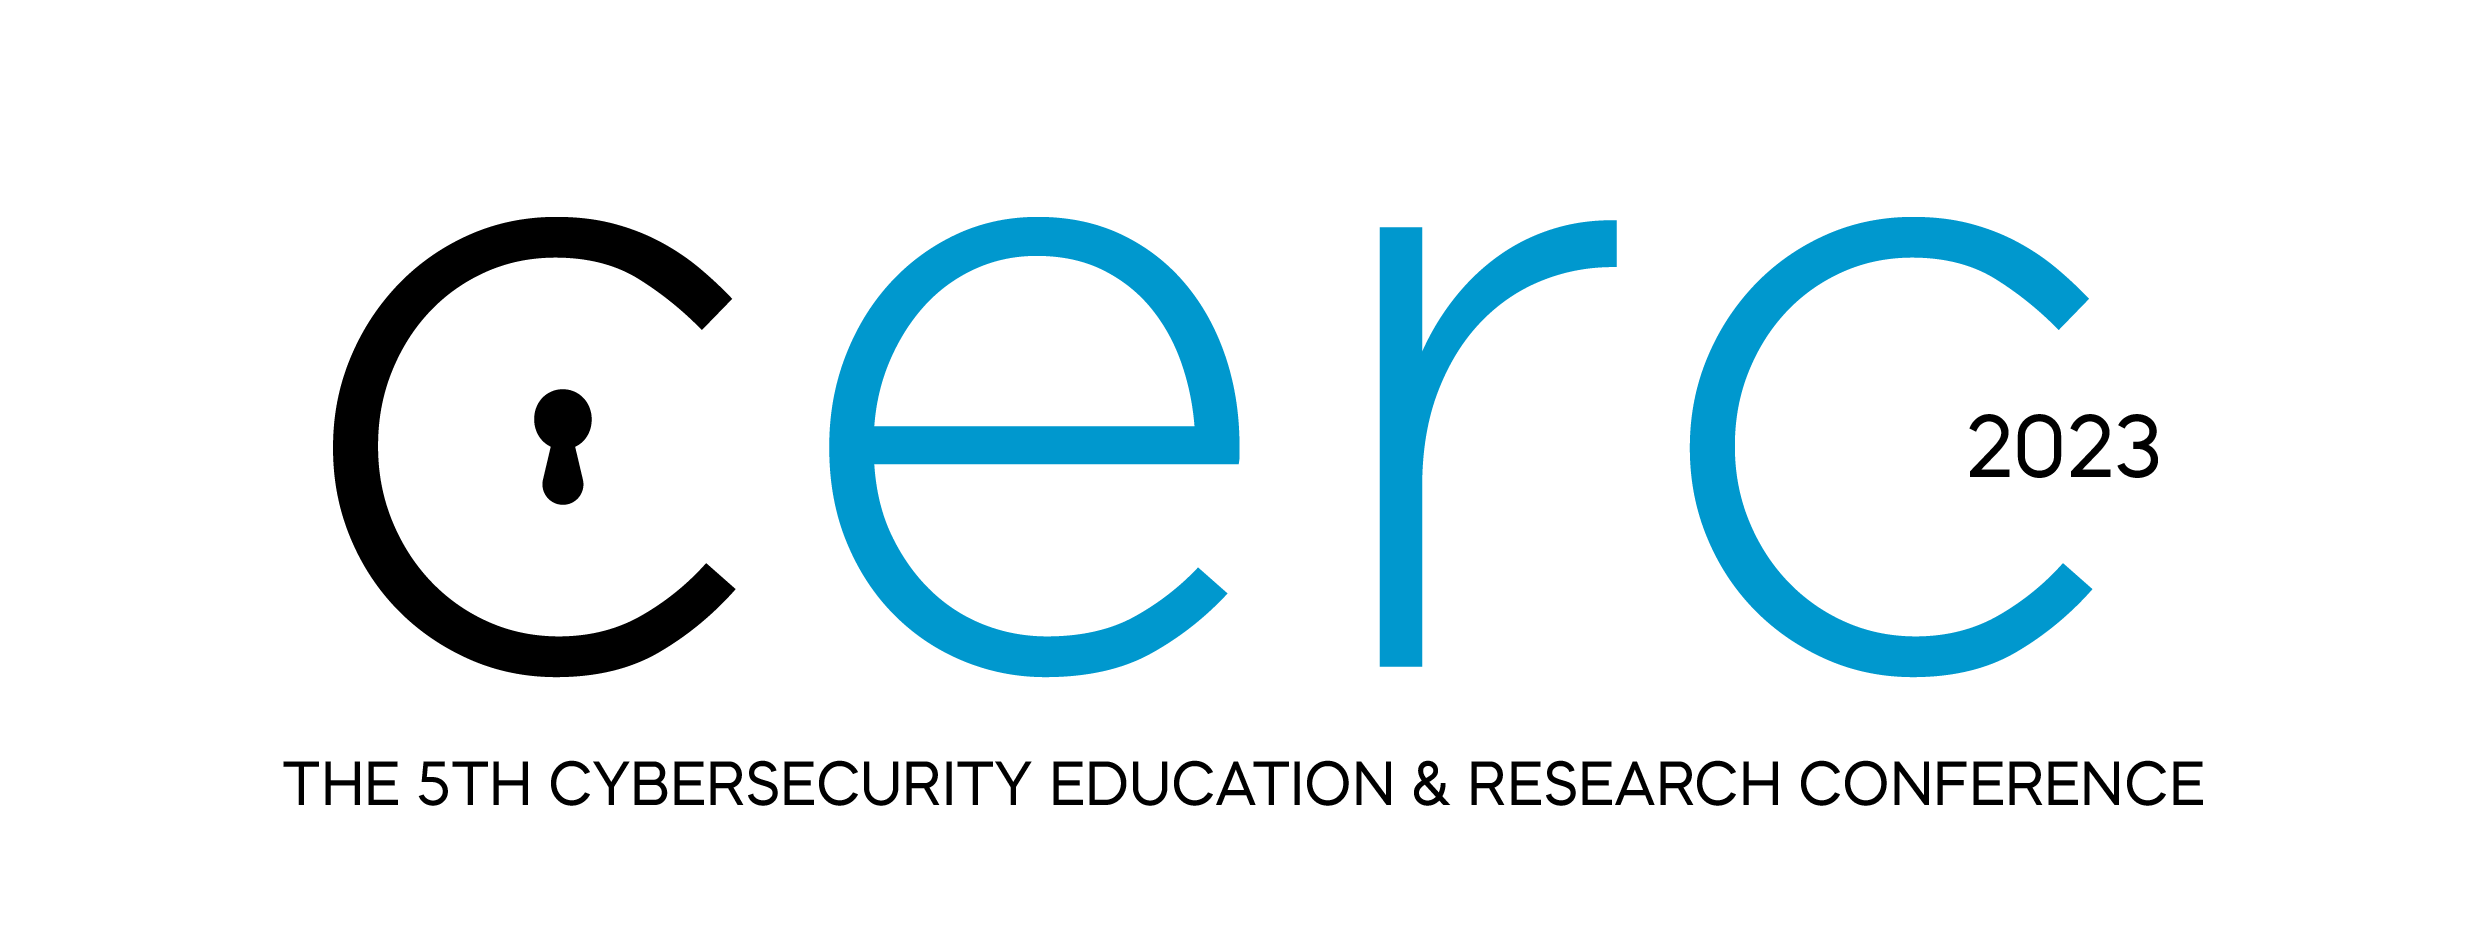 cerc2022 logo